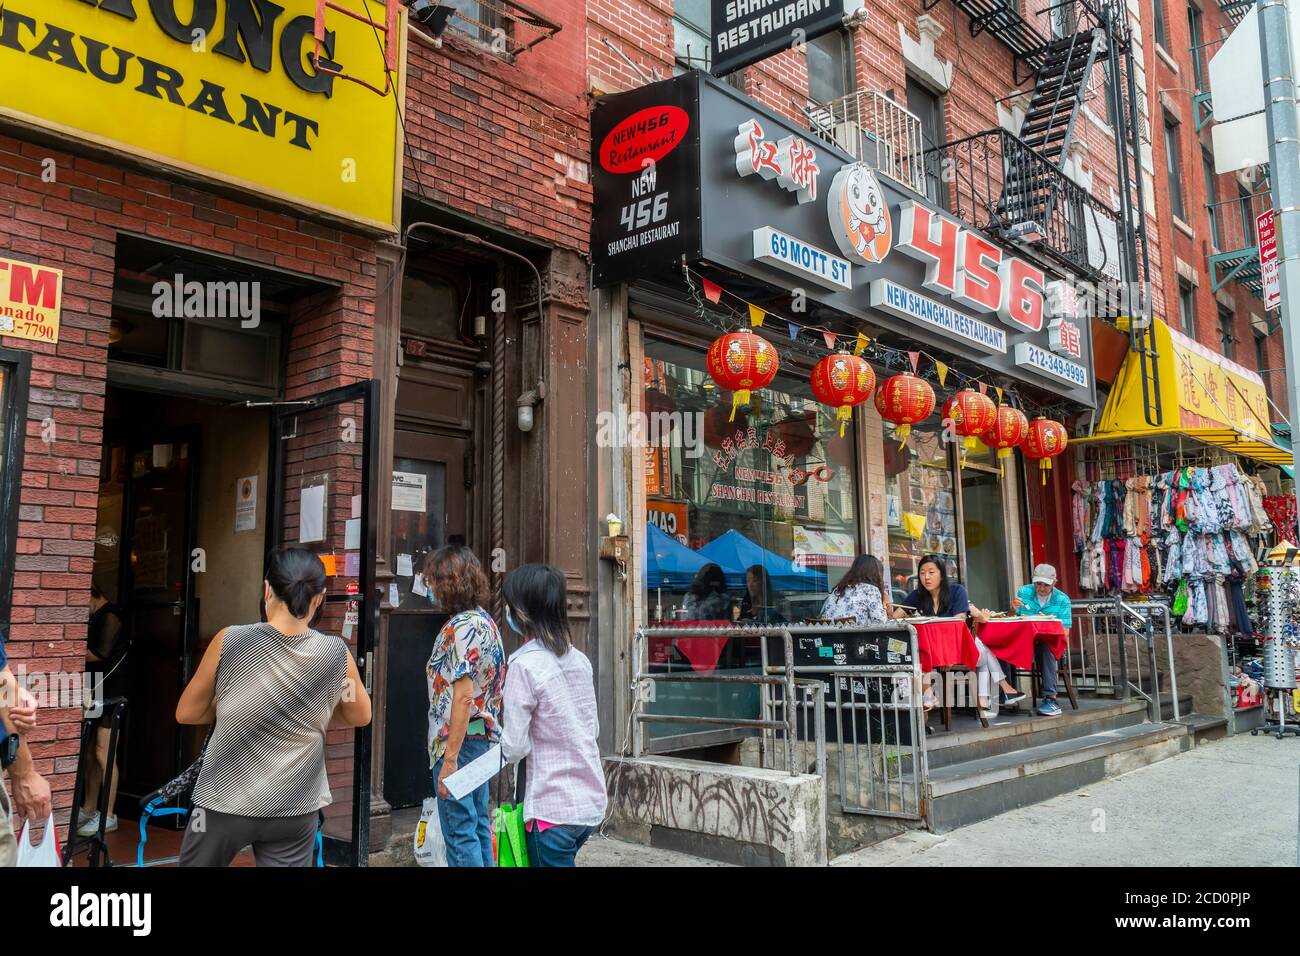 Aktivitäten in Chinatown in New York, einschließlich Abendessen im Freien am Samstag, 15. August 2020. Wegen des Rückgangs des Tourismus aufgrund der Pandemie leiden die Unternehmen in Chinatown. (© Richard B. Levine) Stockfoto